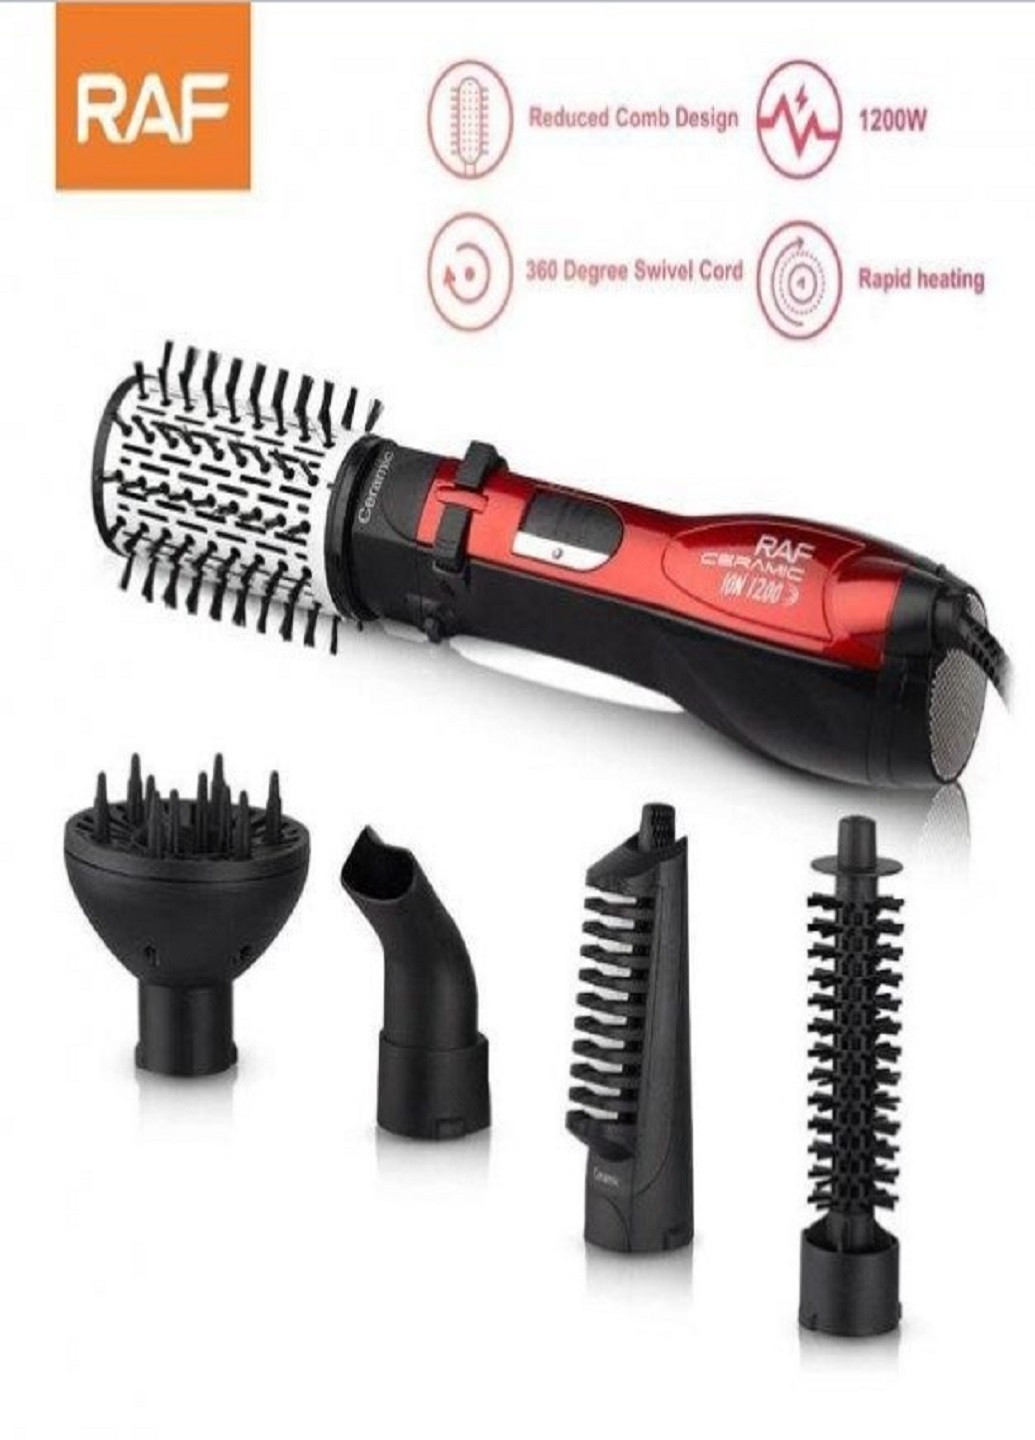 Фен щетка Rotative Brush R416 расческа браш 5 в 1 для волос RAF (259504012)